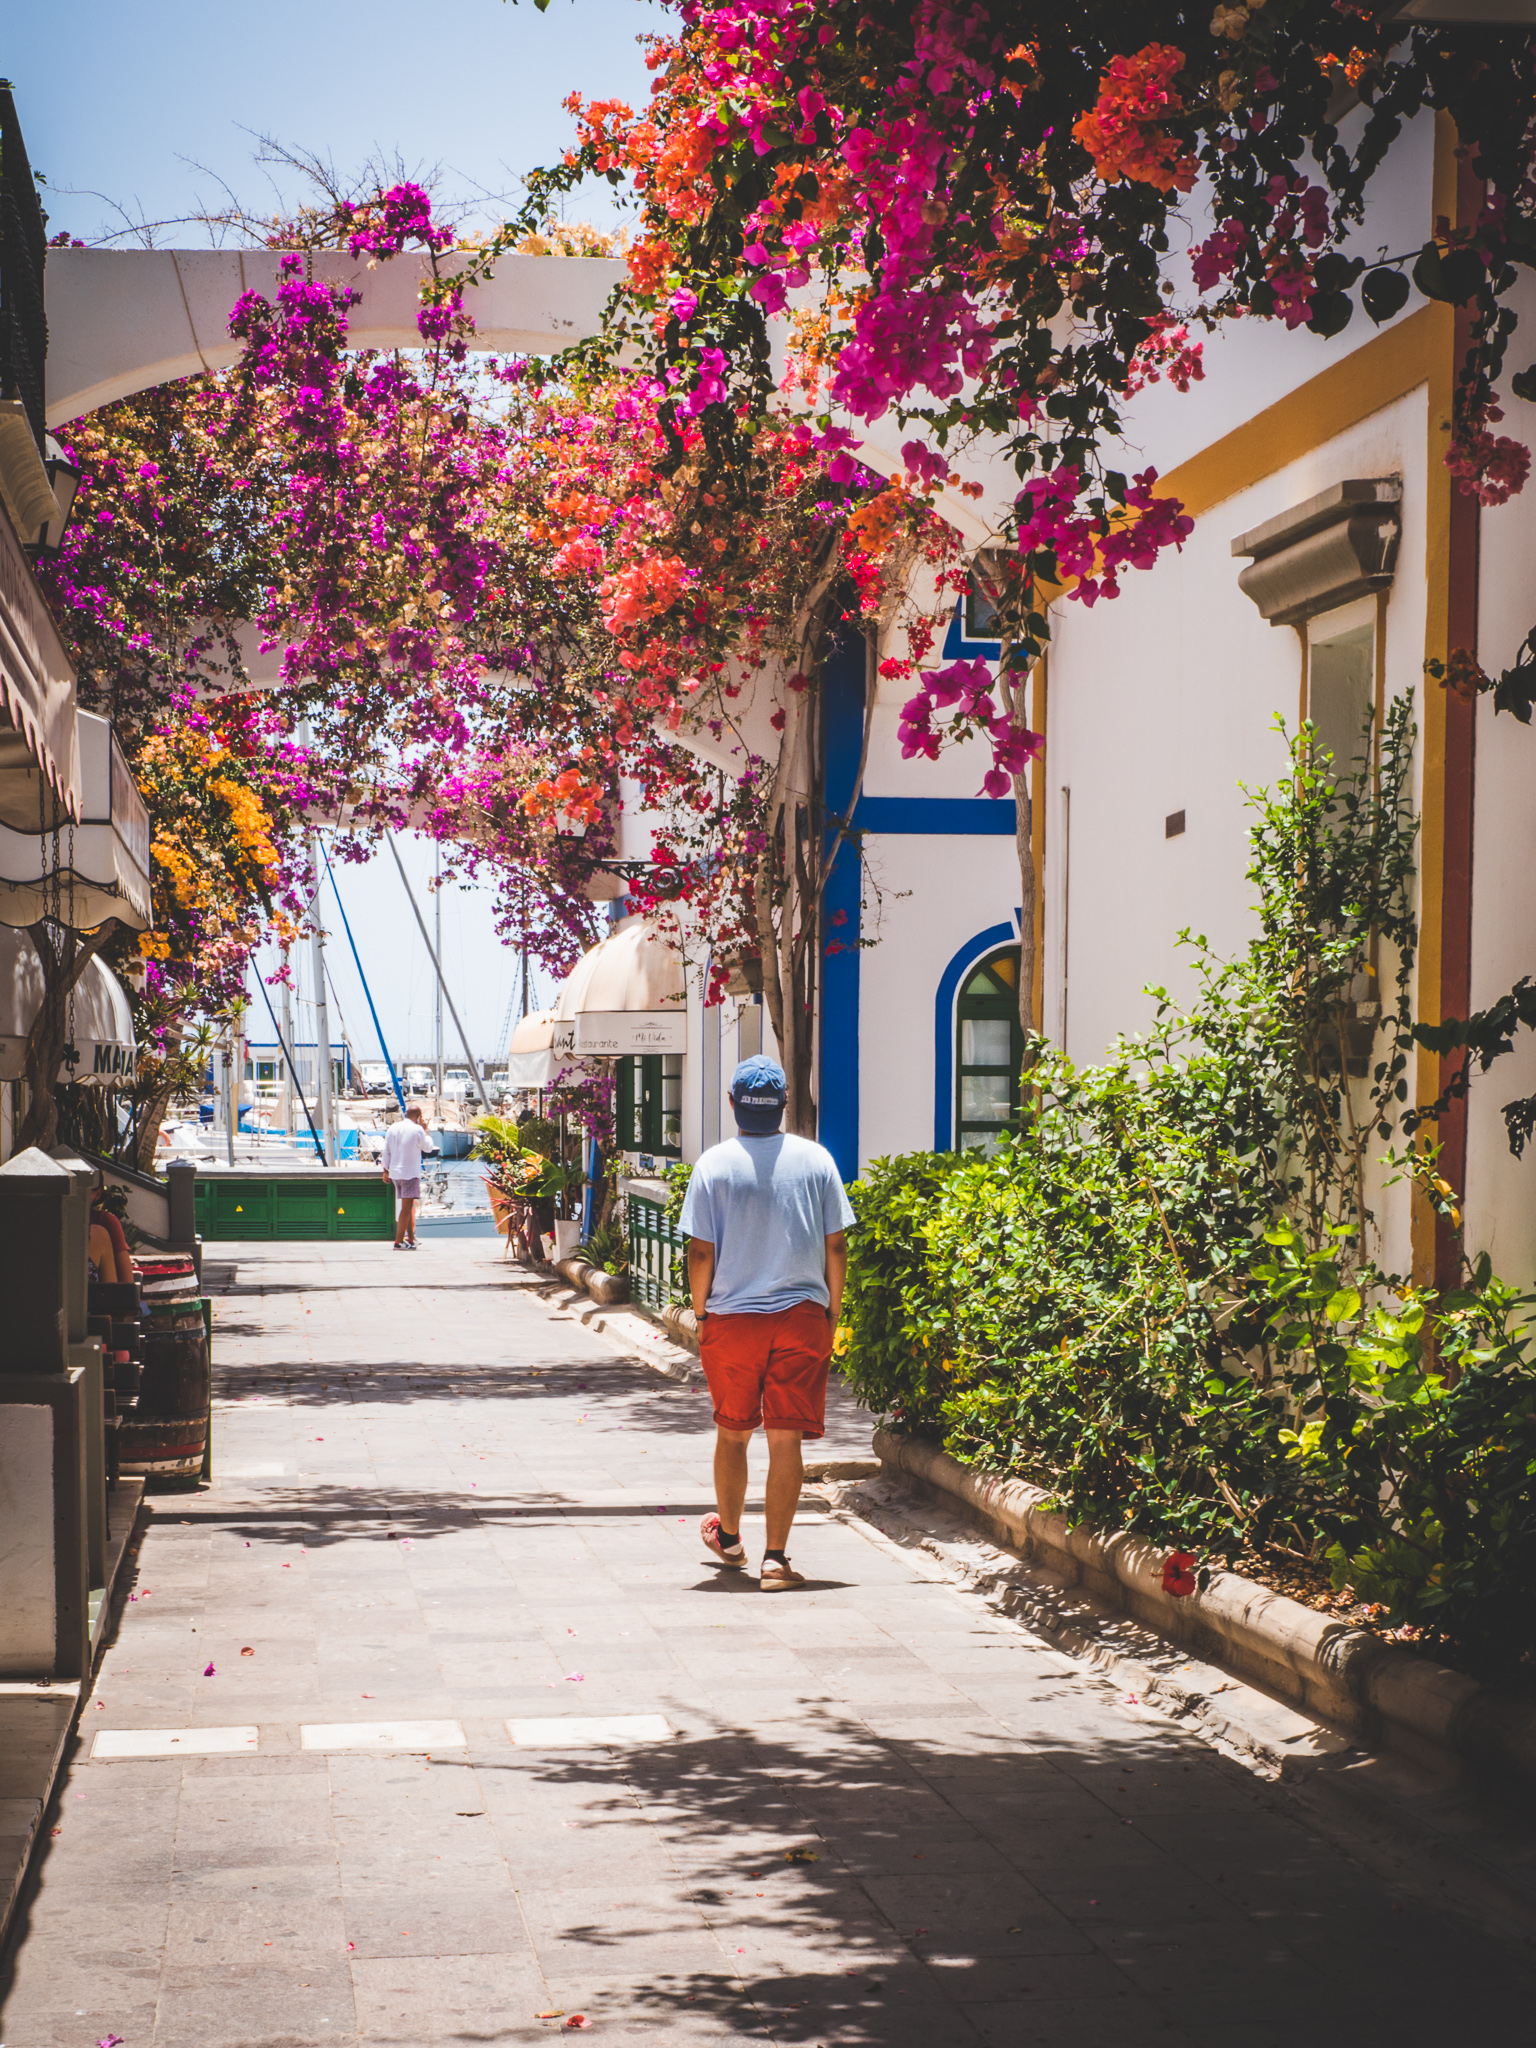 Passage dans les ruelles très fleuries de la ville de Puerto de Mogan